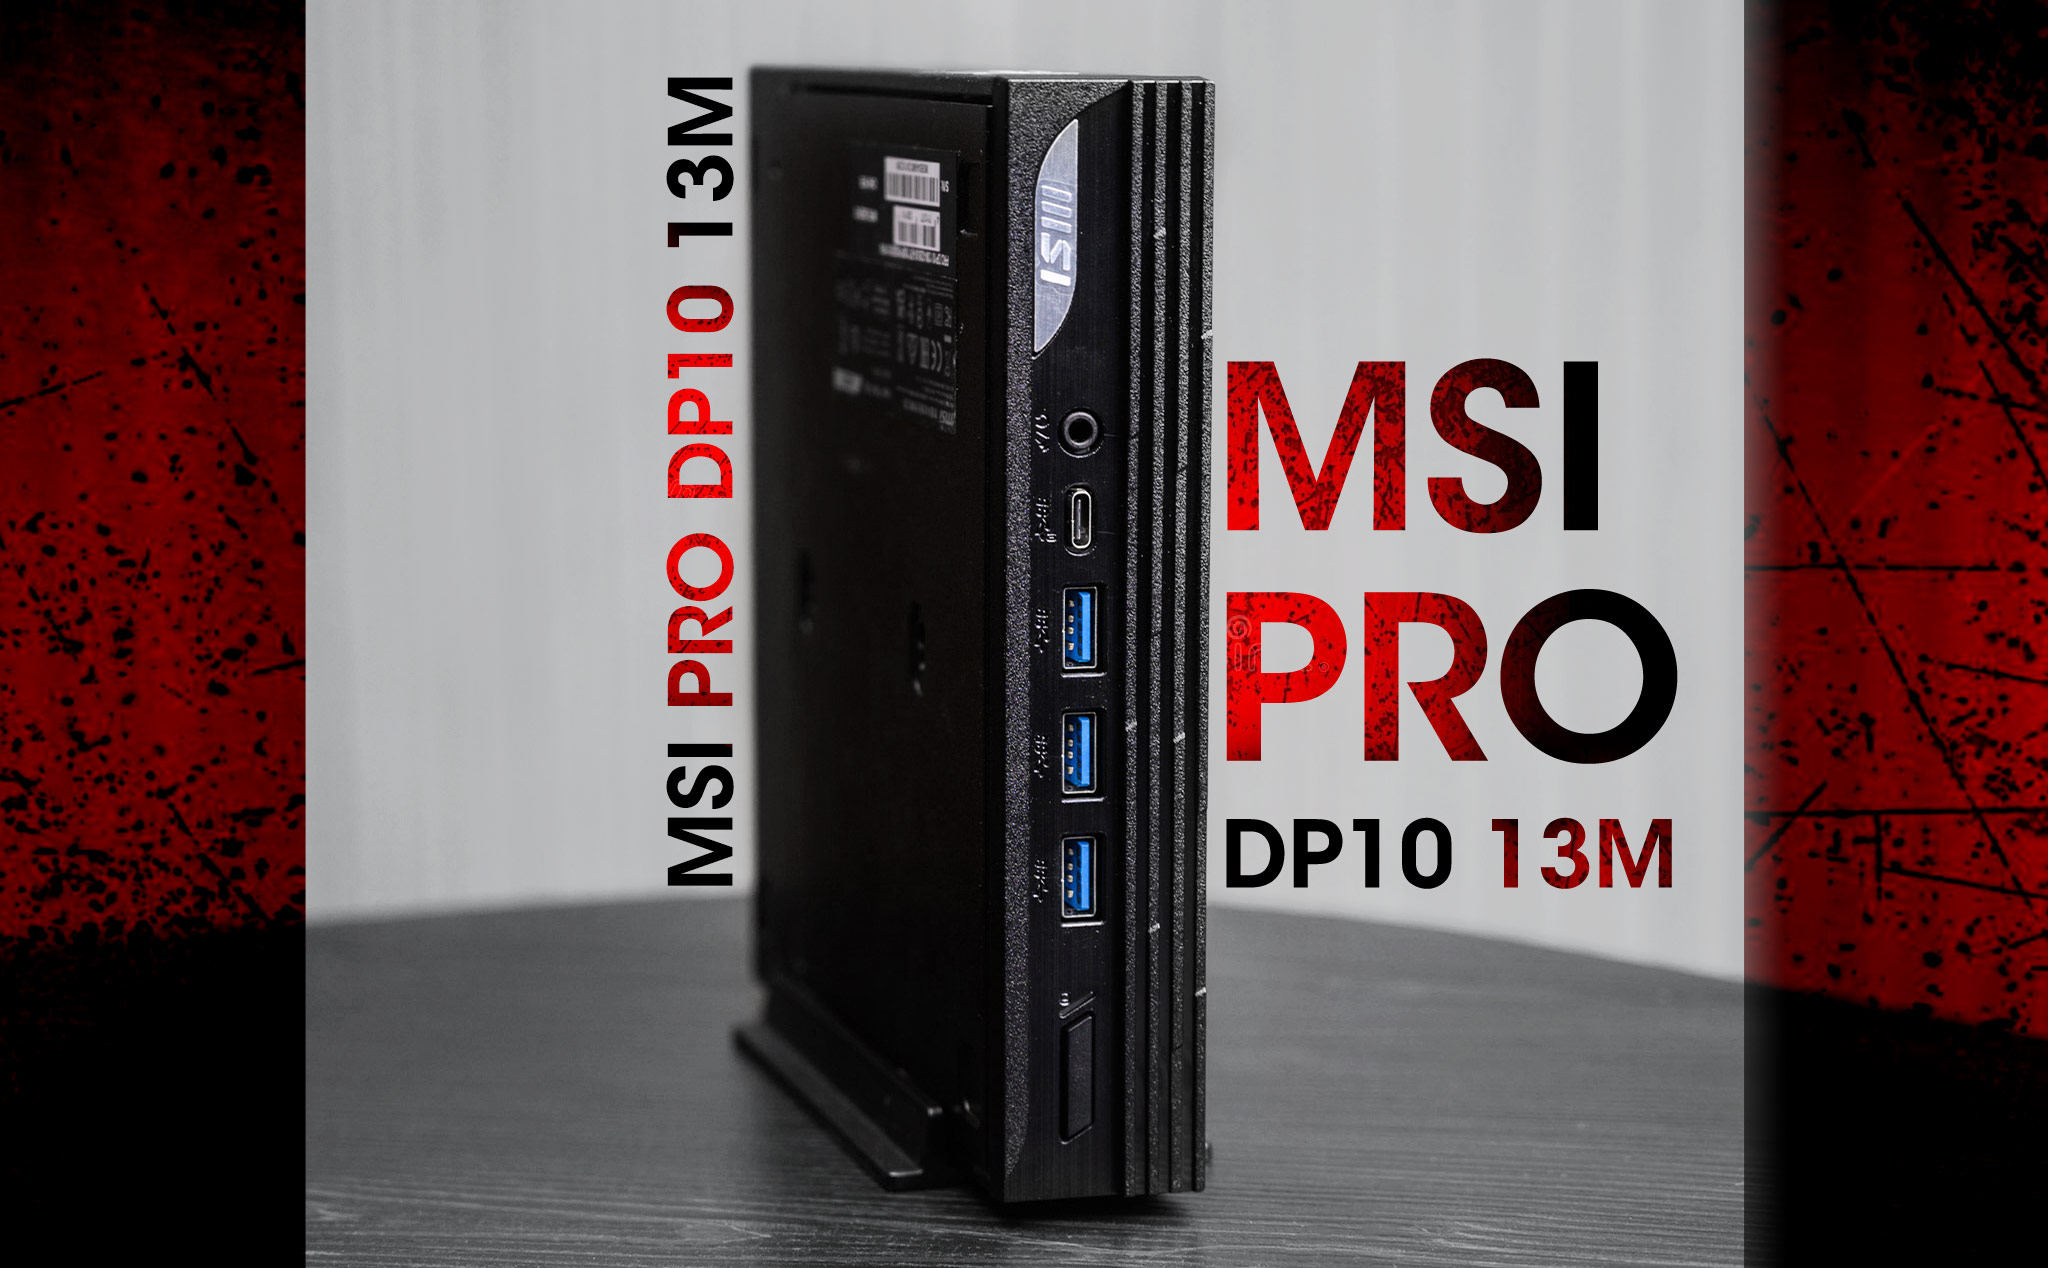 Trên tay MSI Pro DP10 13M: PC nhỏ gọn với nền tảng Intel Raptor Lake P, Wi-Fi 6E và Thunderbolt 4